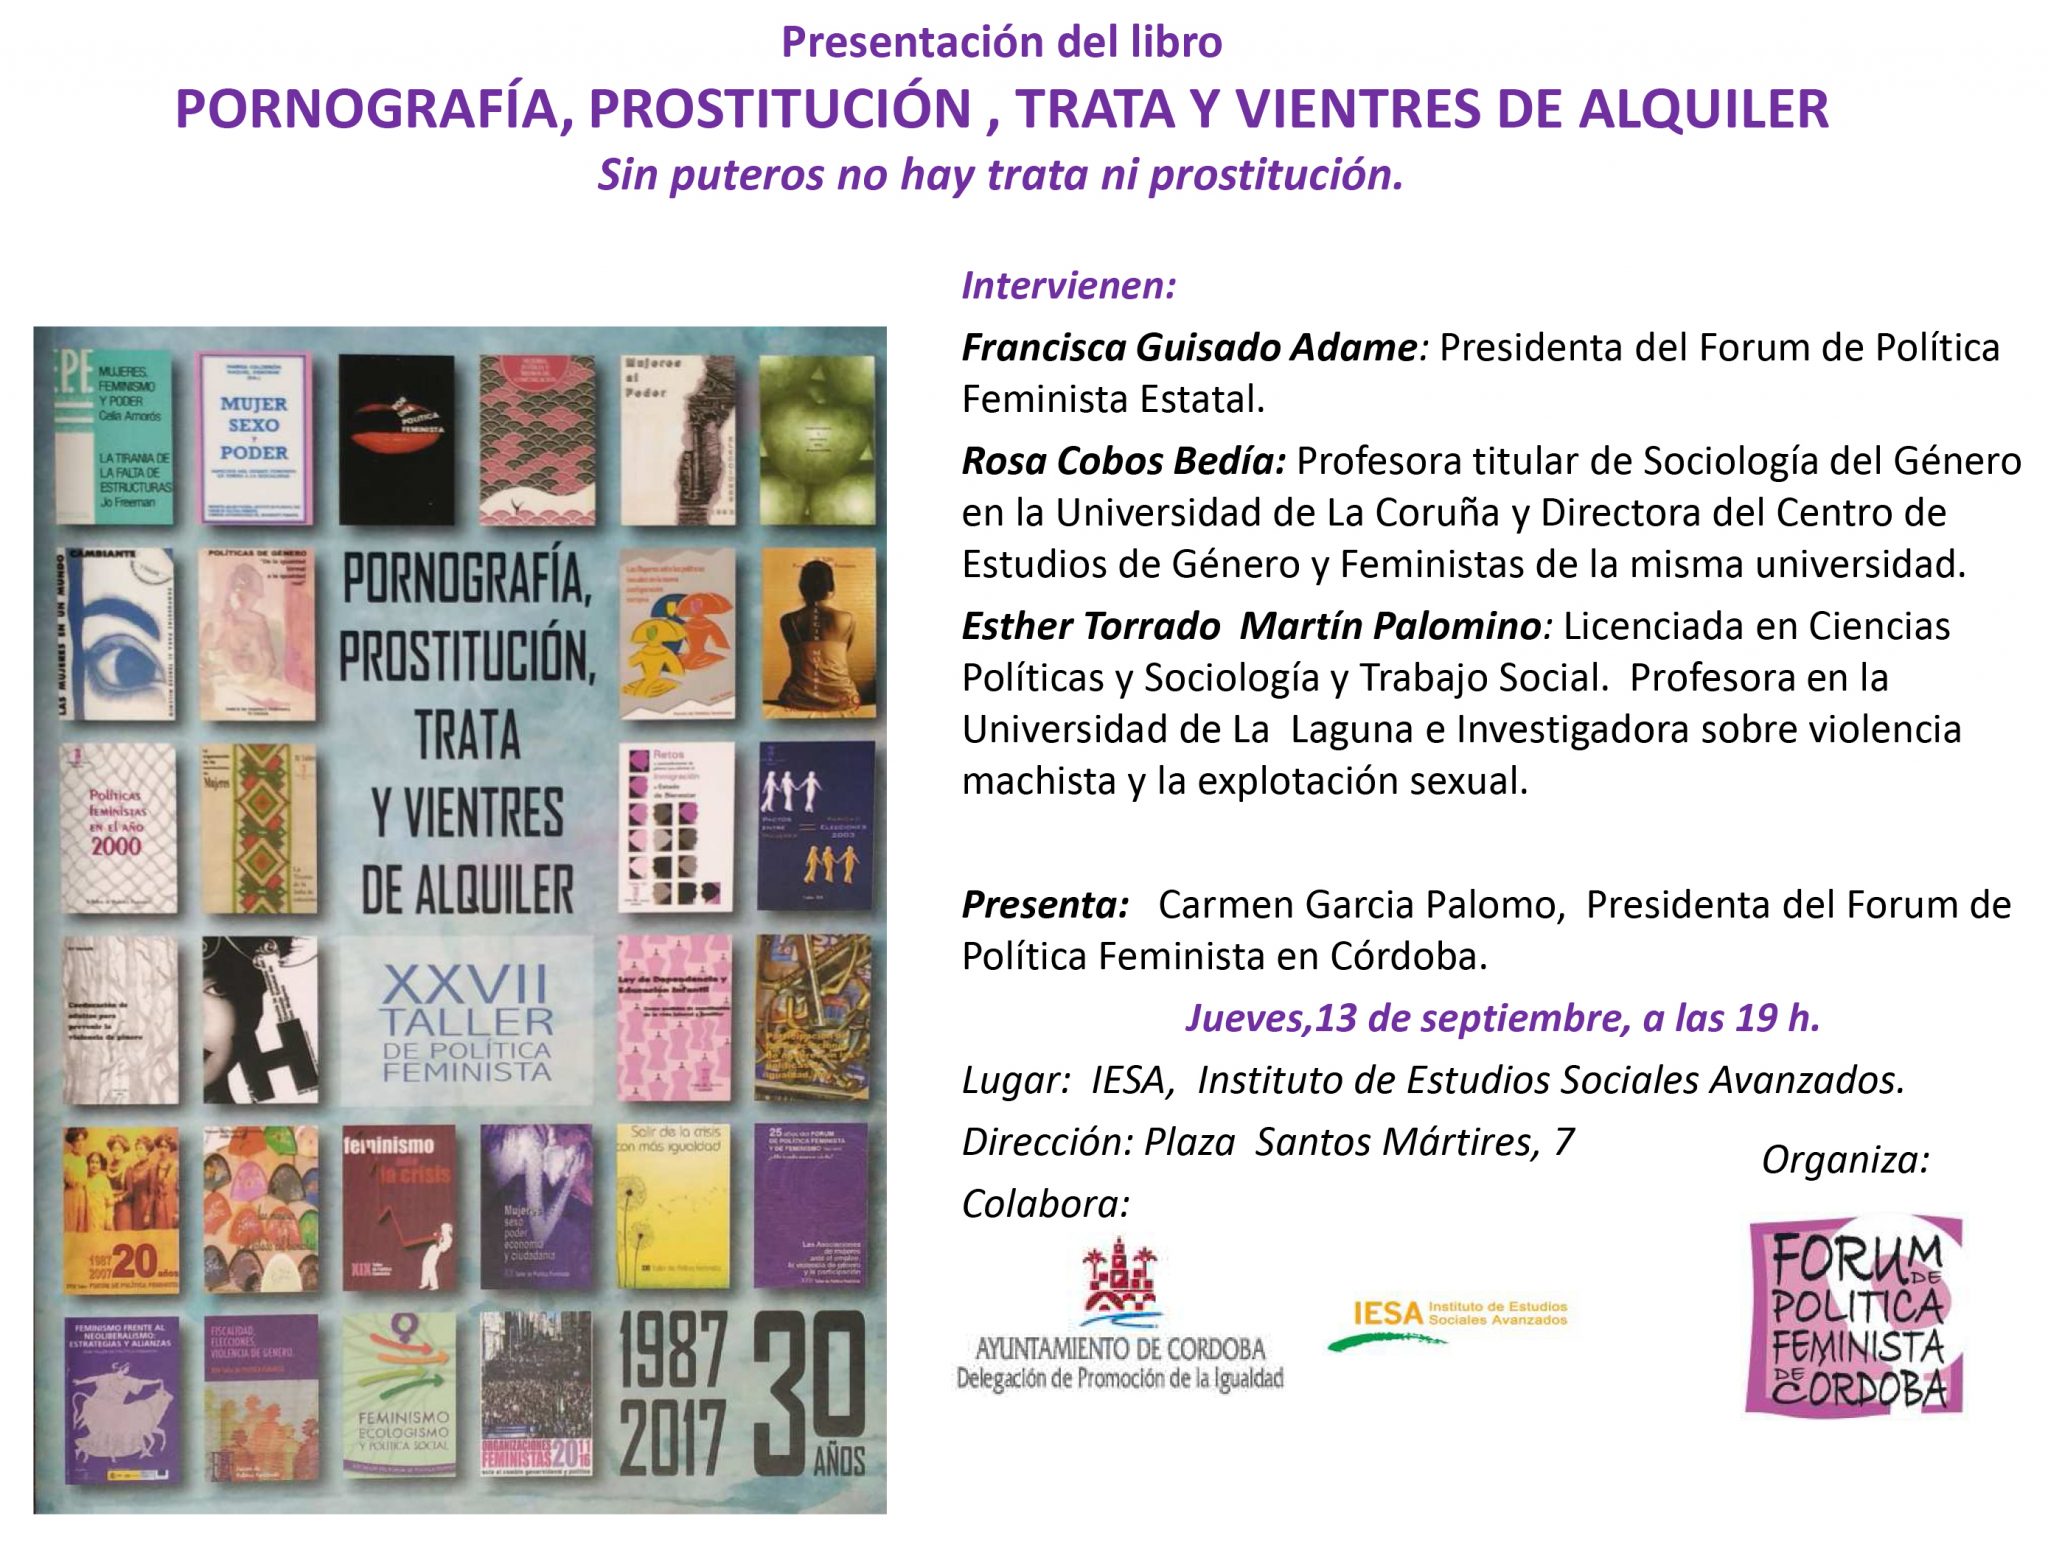 Presentación del libro “Pornografía, Prostitución, Trata y Vientres de Alquiler”. Forum de política  Feminista